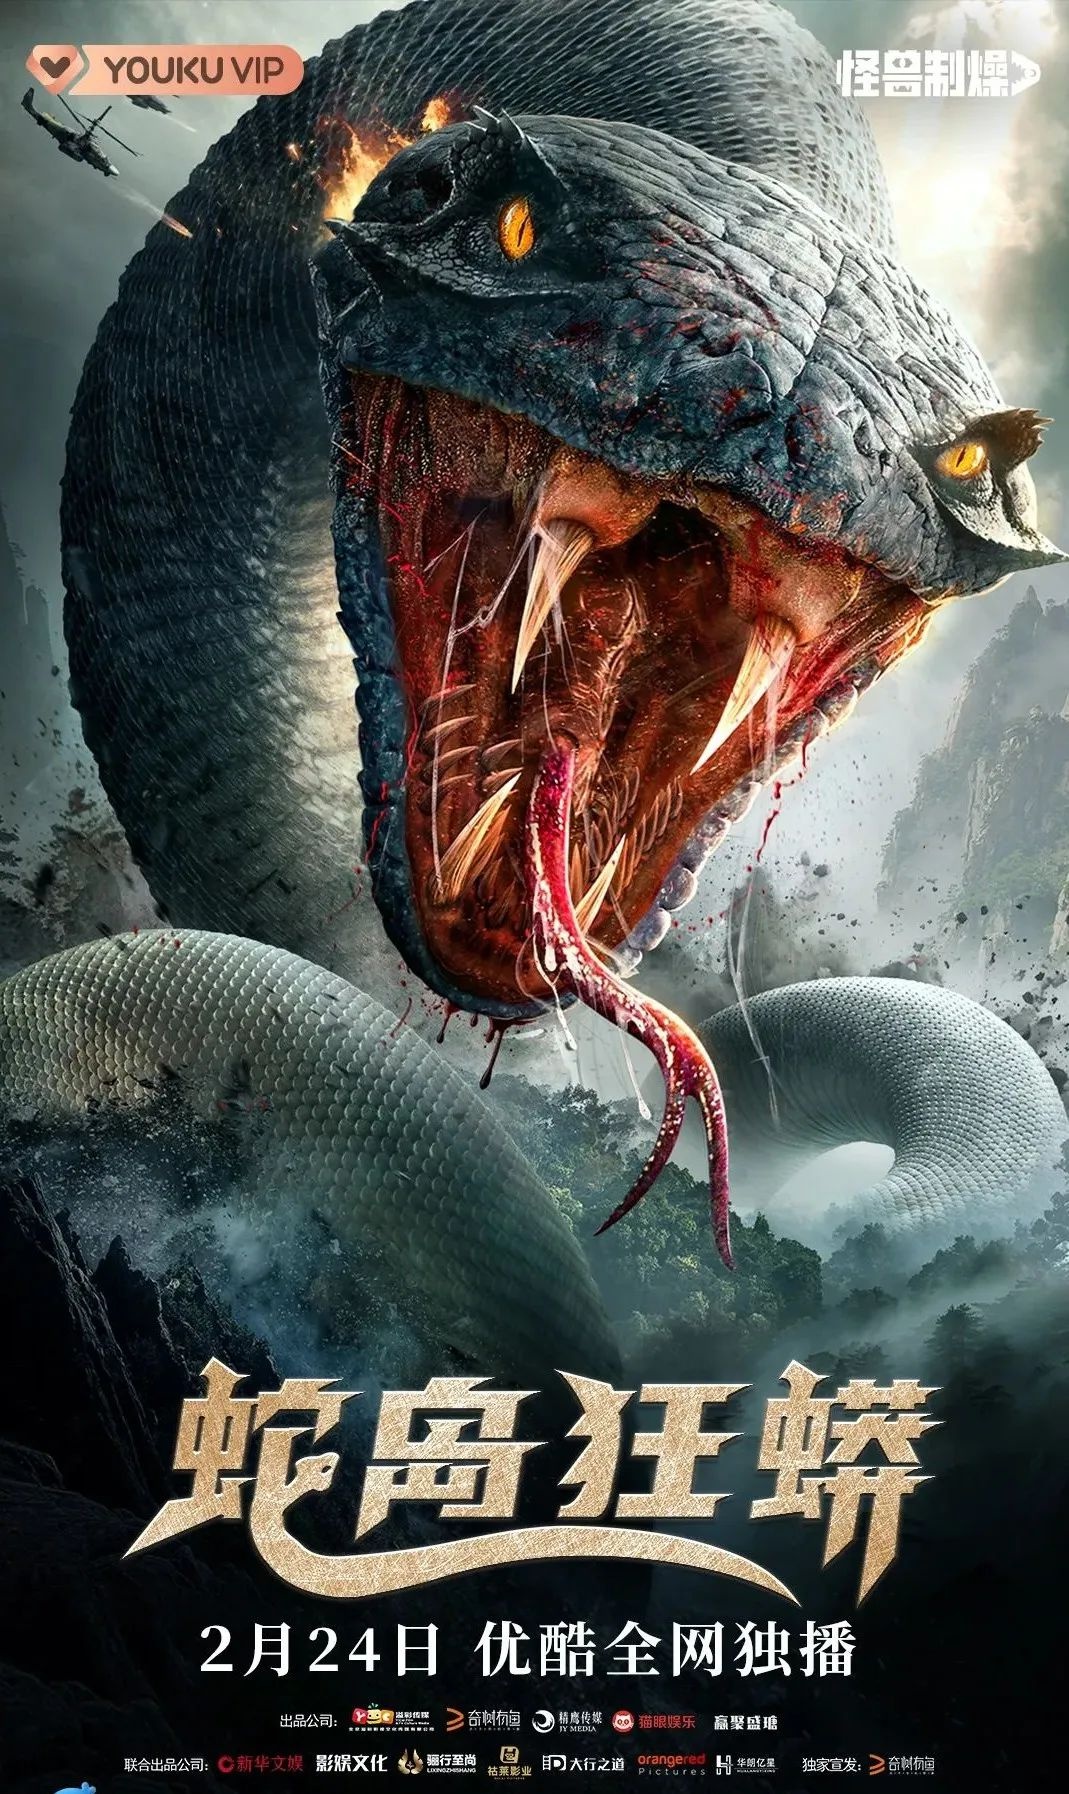 巨蟒复仇揭露人性弱点!佛企出品电影《蛇岛狂蟒》定档2月24日